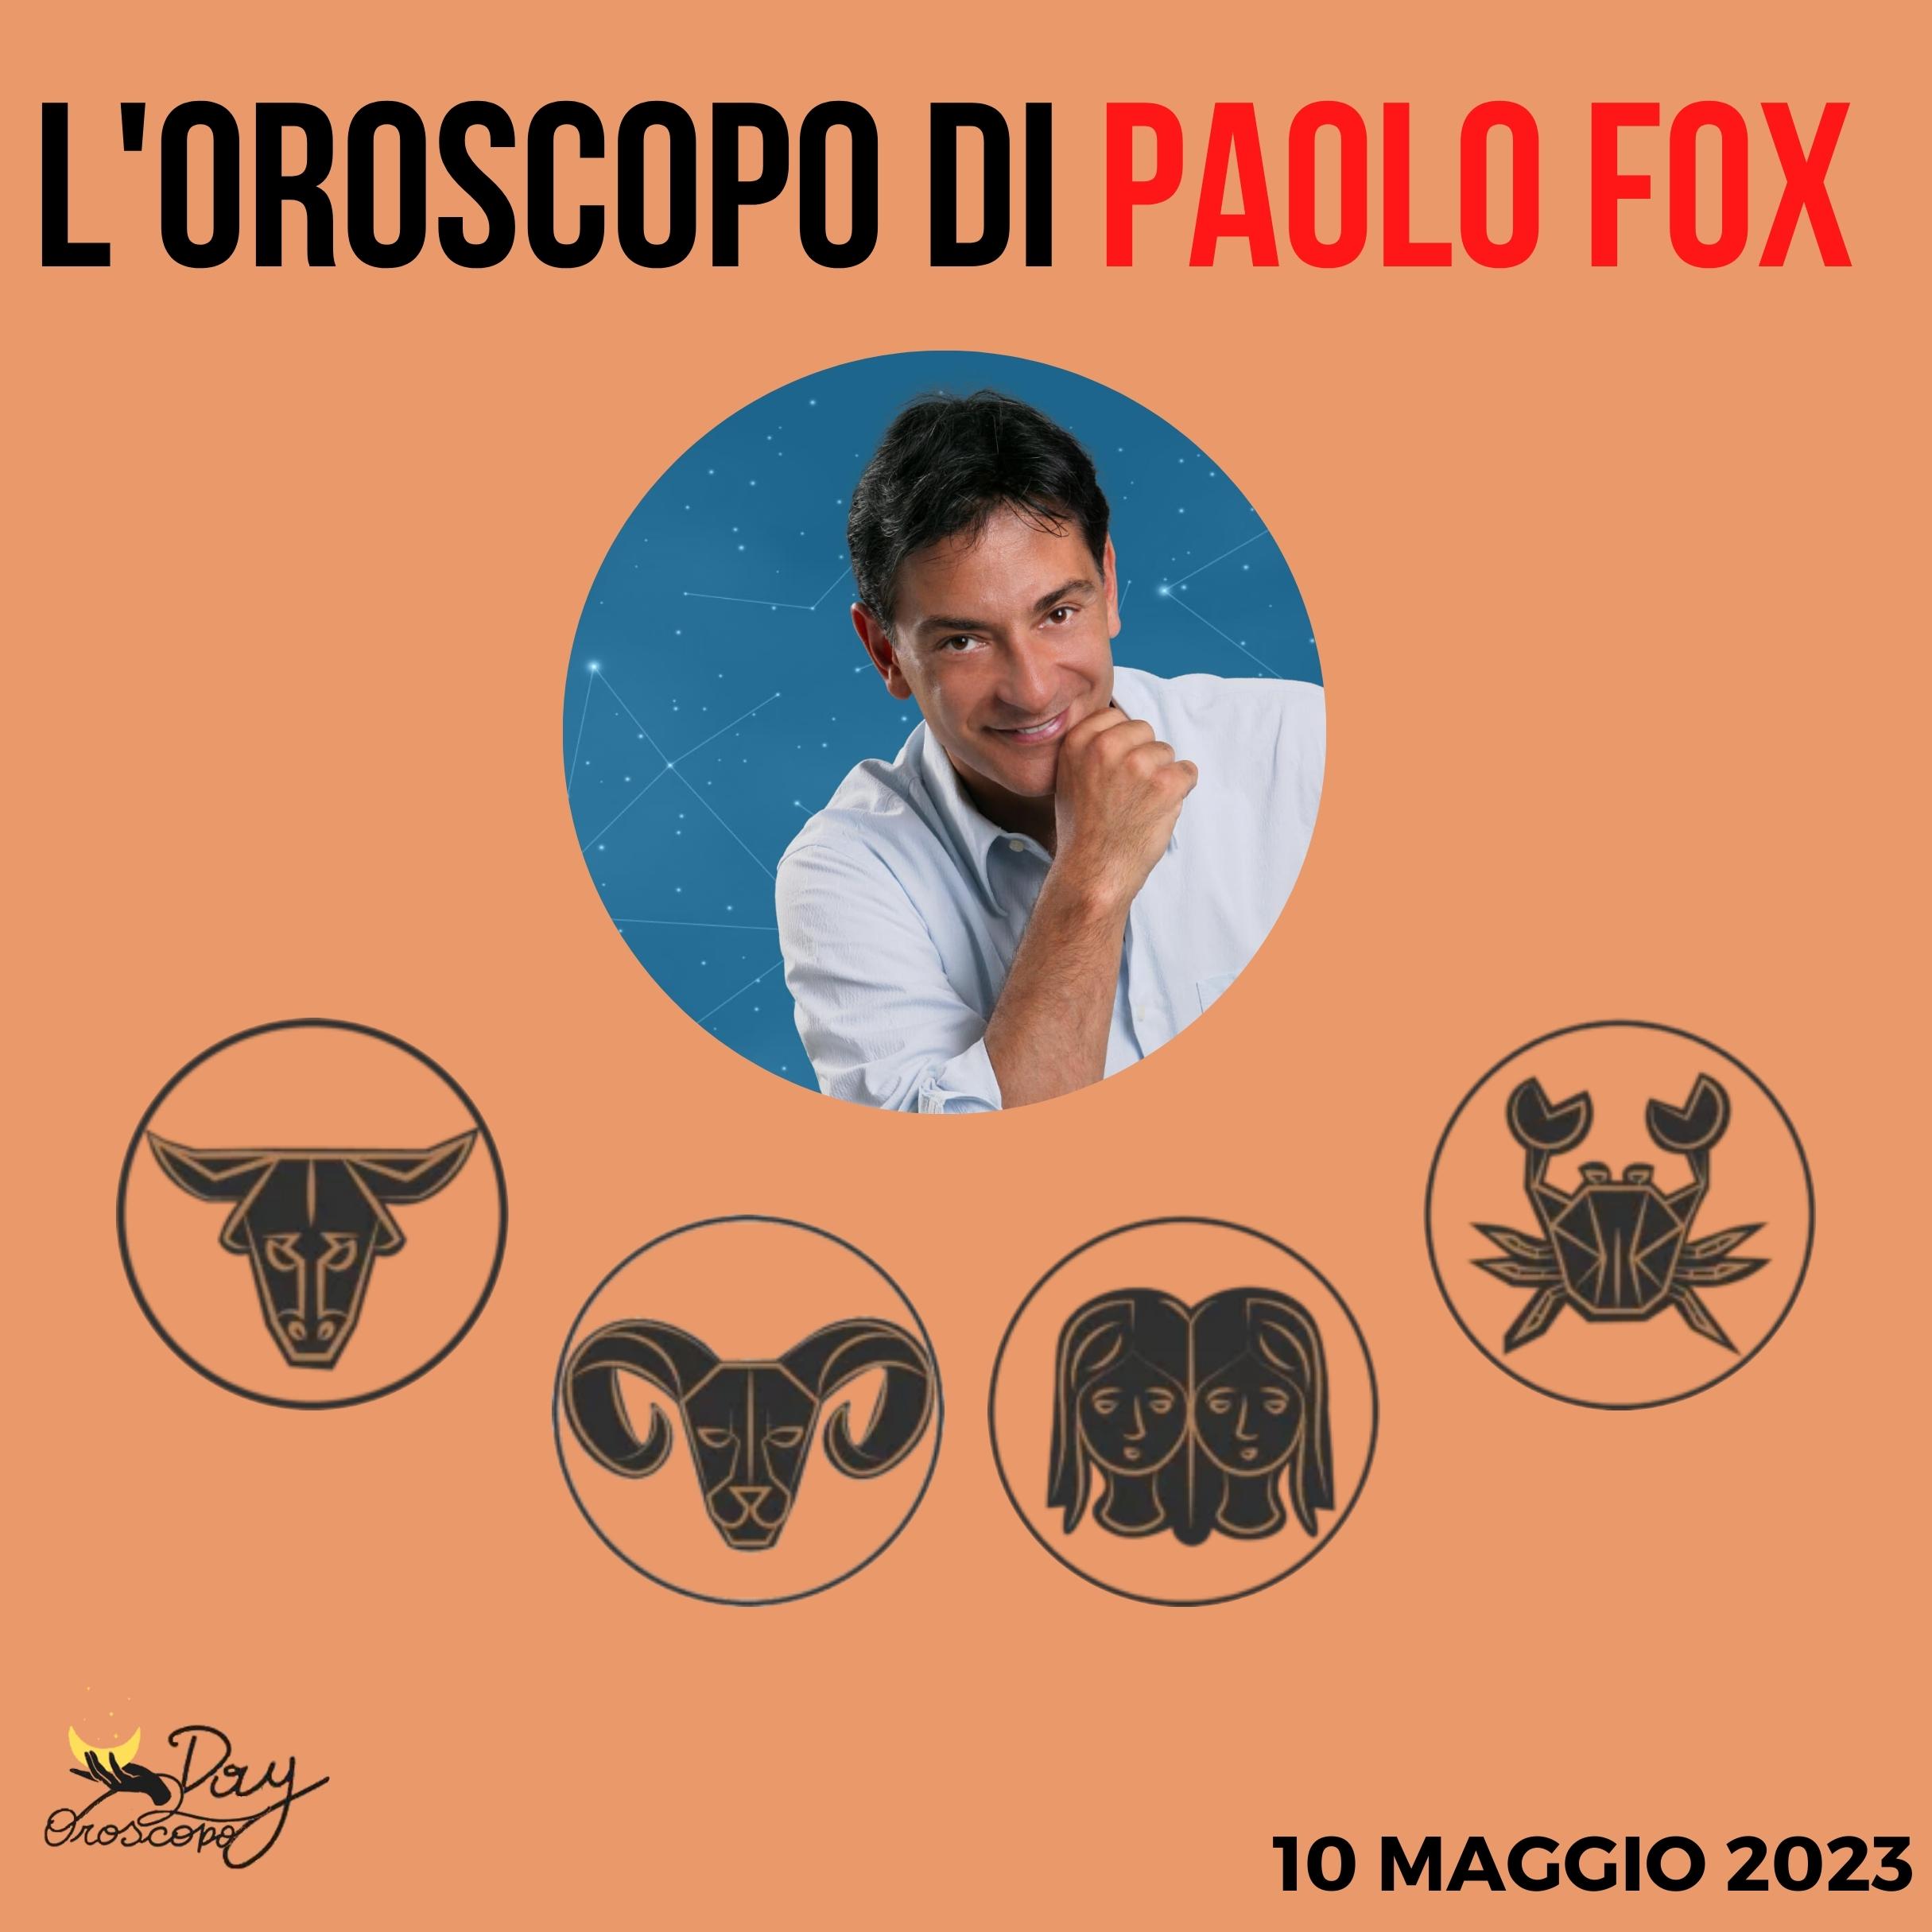 Oroscopo oggi domani Paolo Fox 10 maggio Toro Ariete Gemelli Cancro